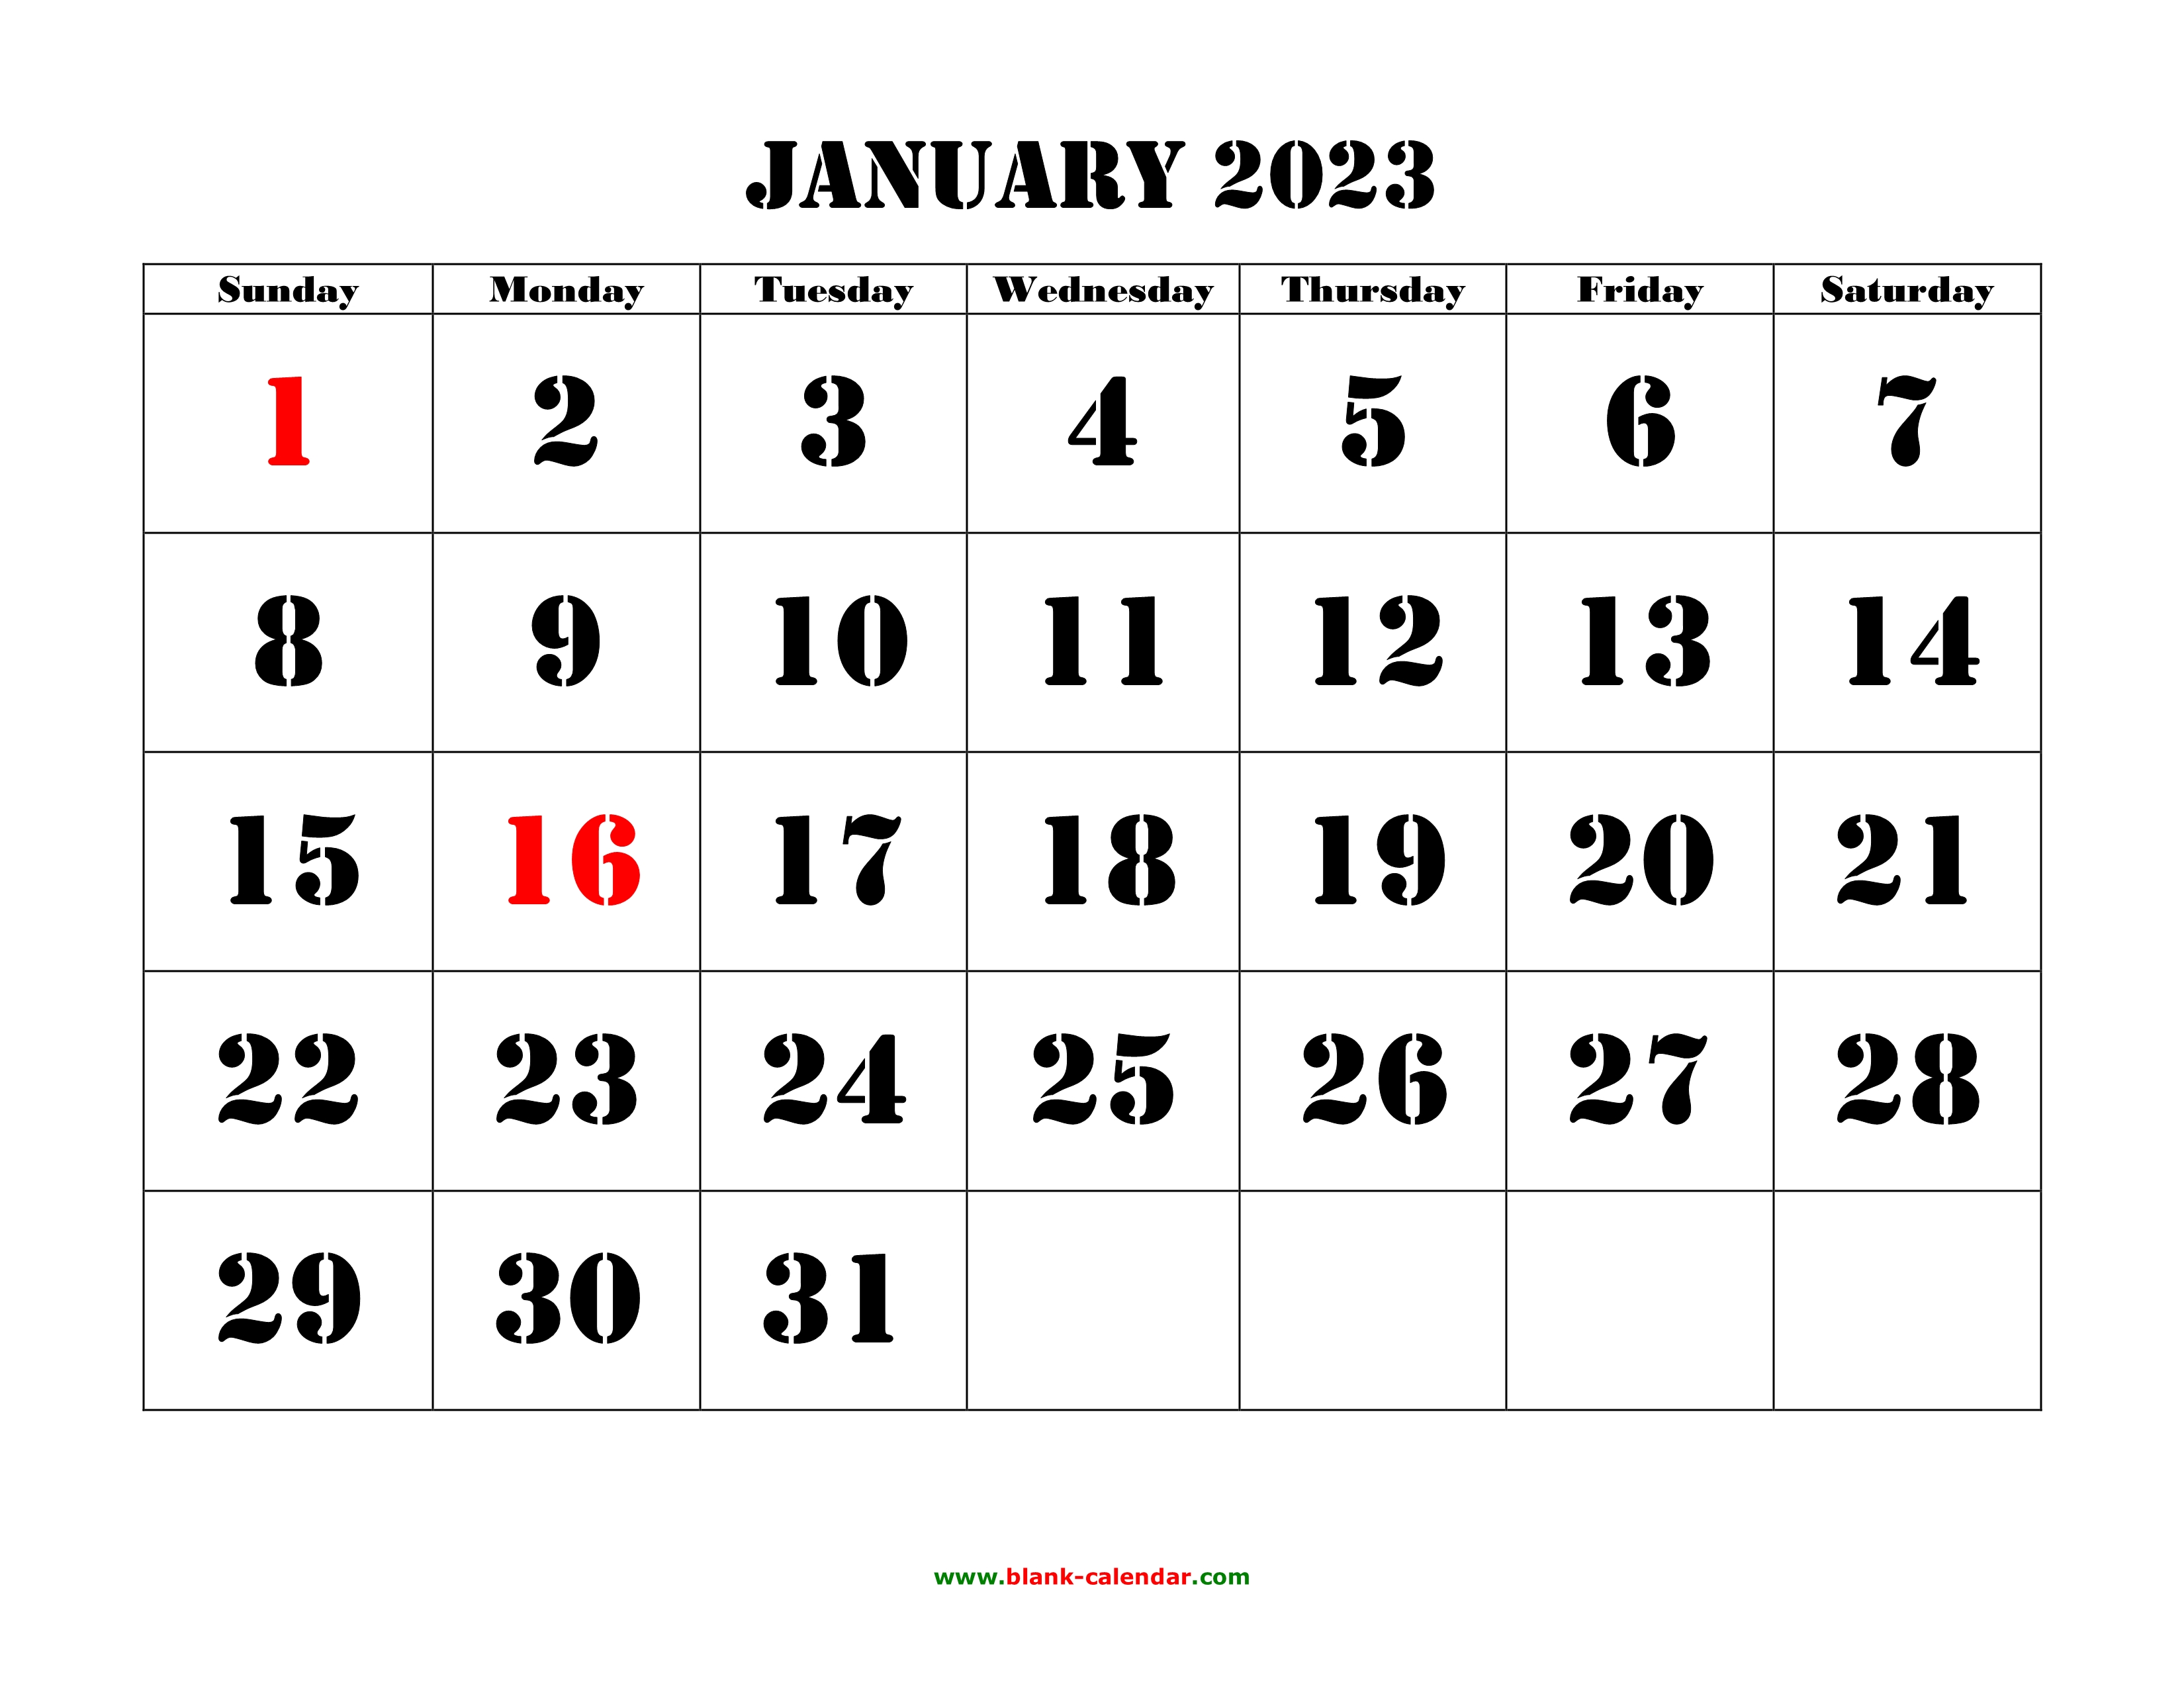 galen-calendar-2023-martin-printable-calendars